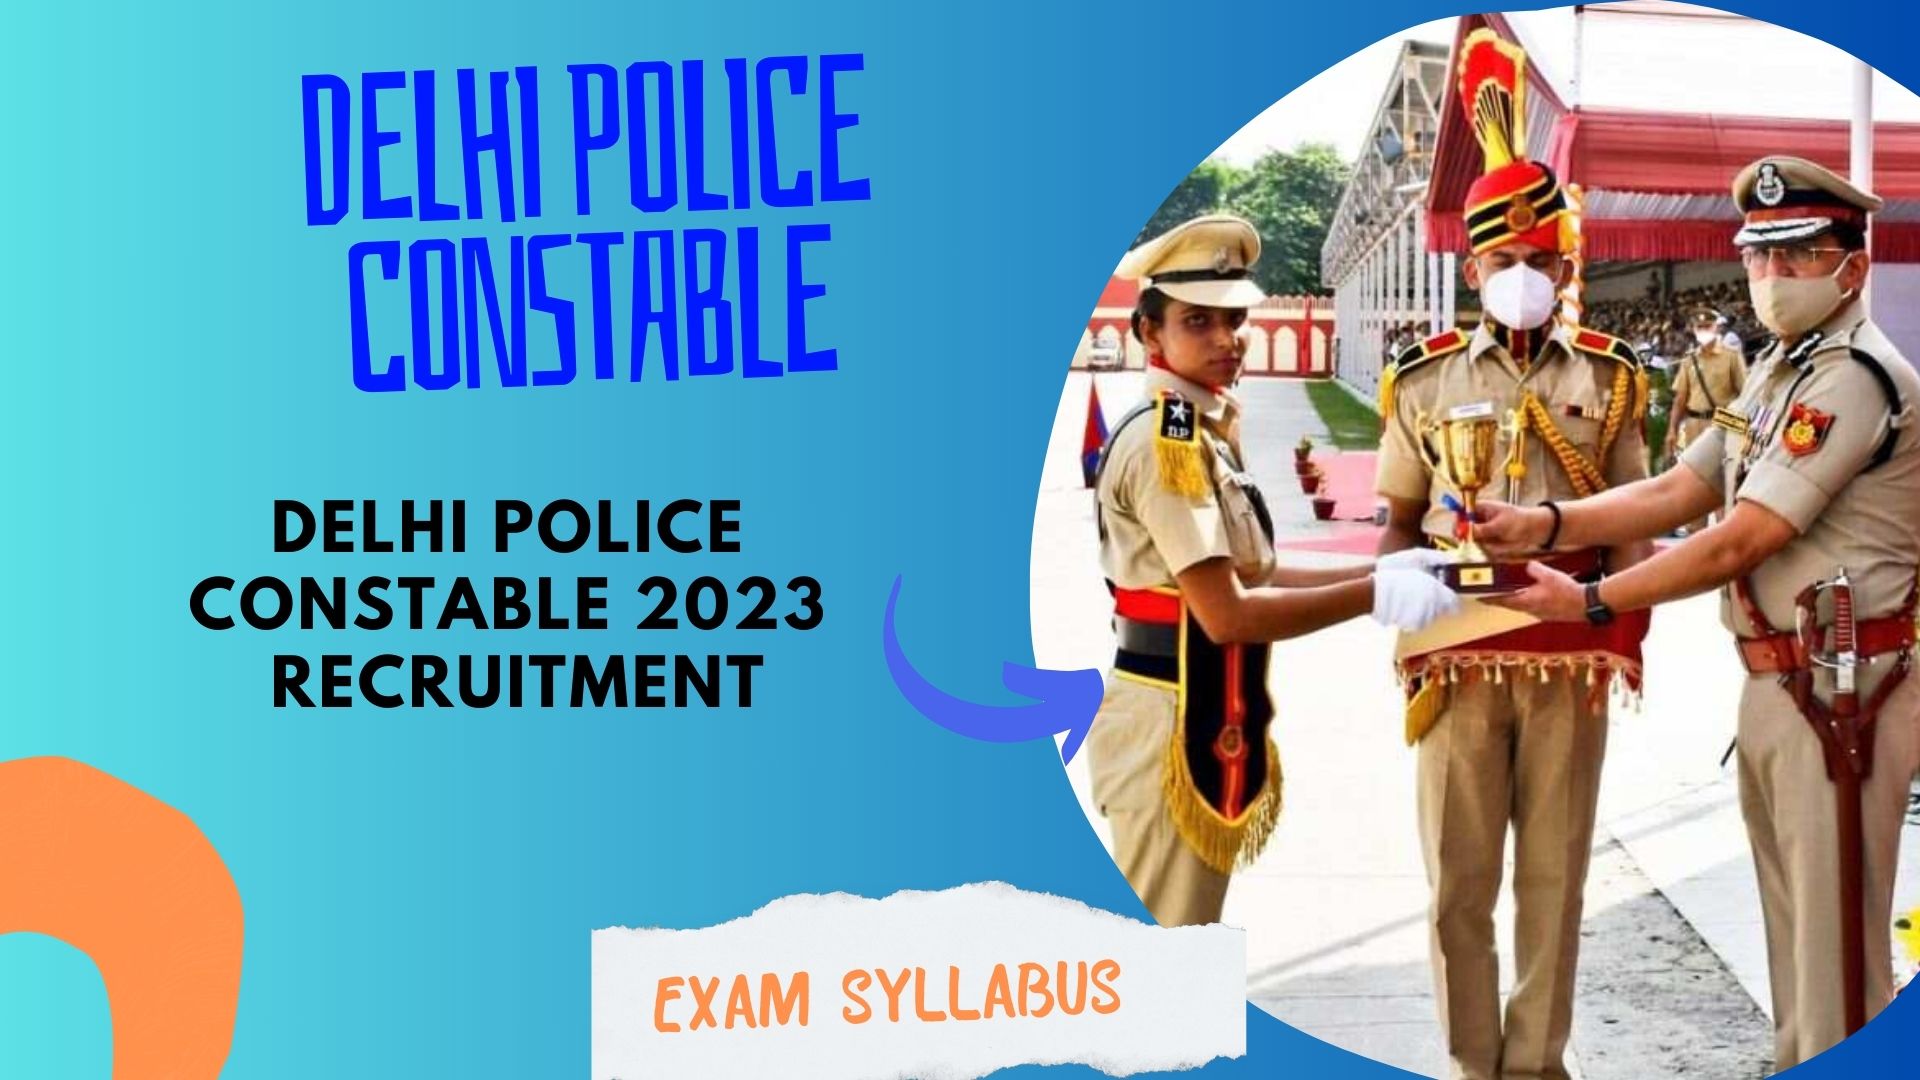 Delhi Police Constable, Exam Syllabus Vacancy